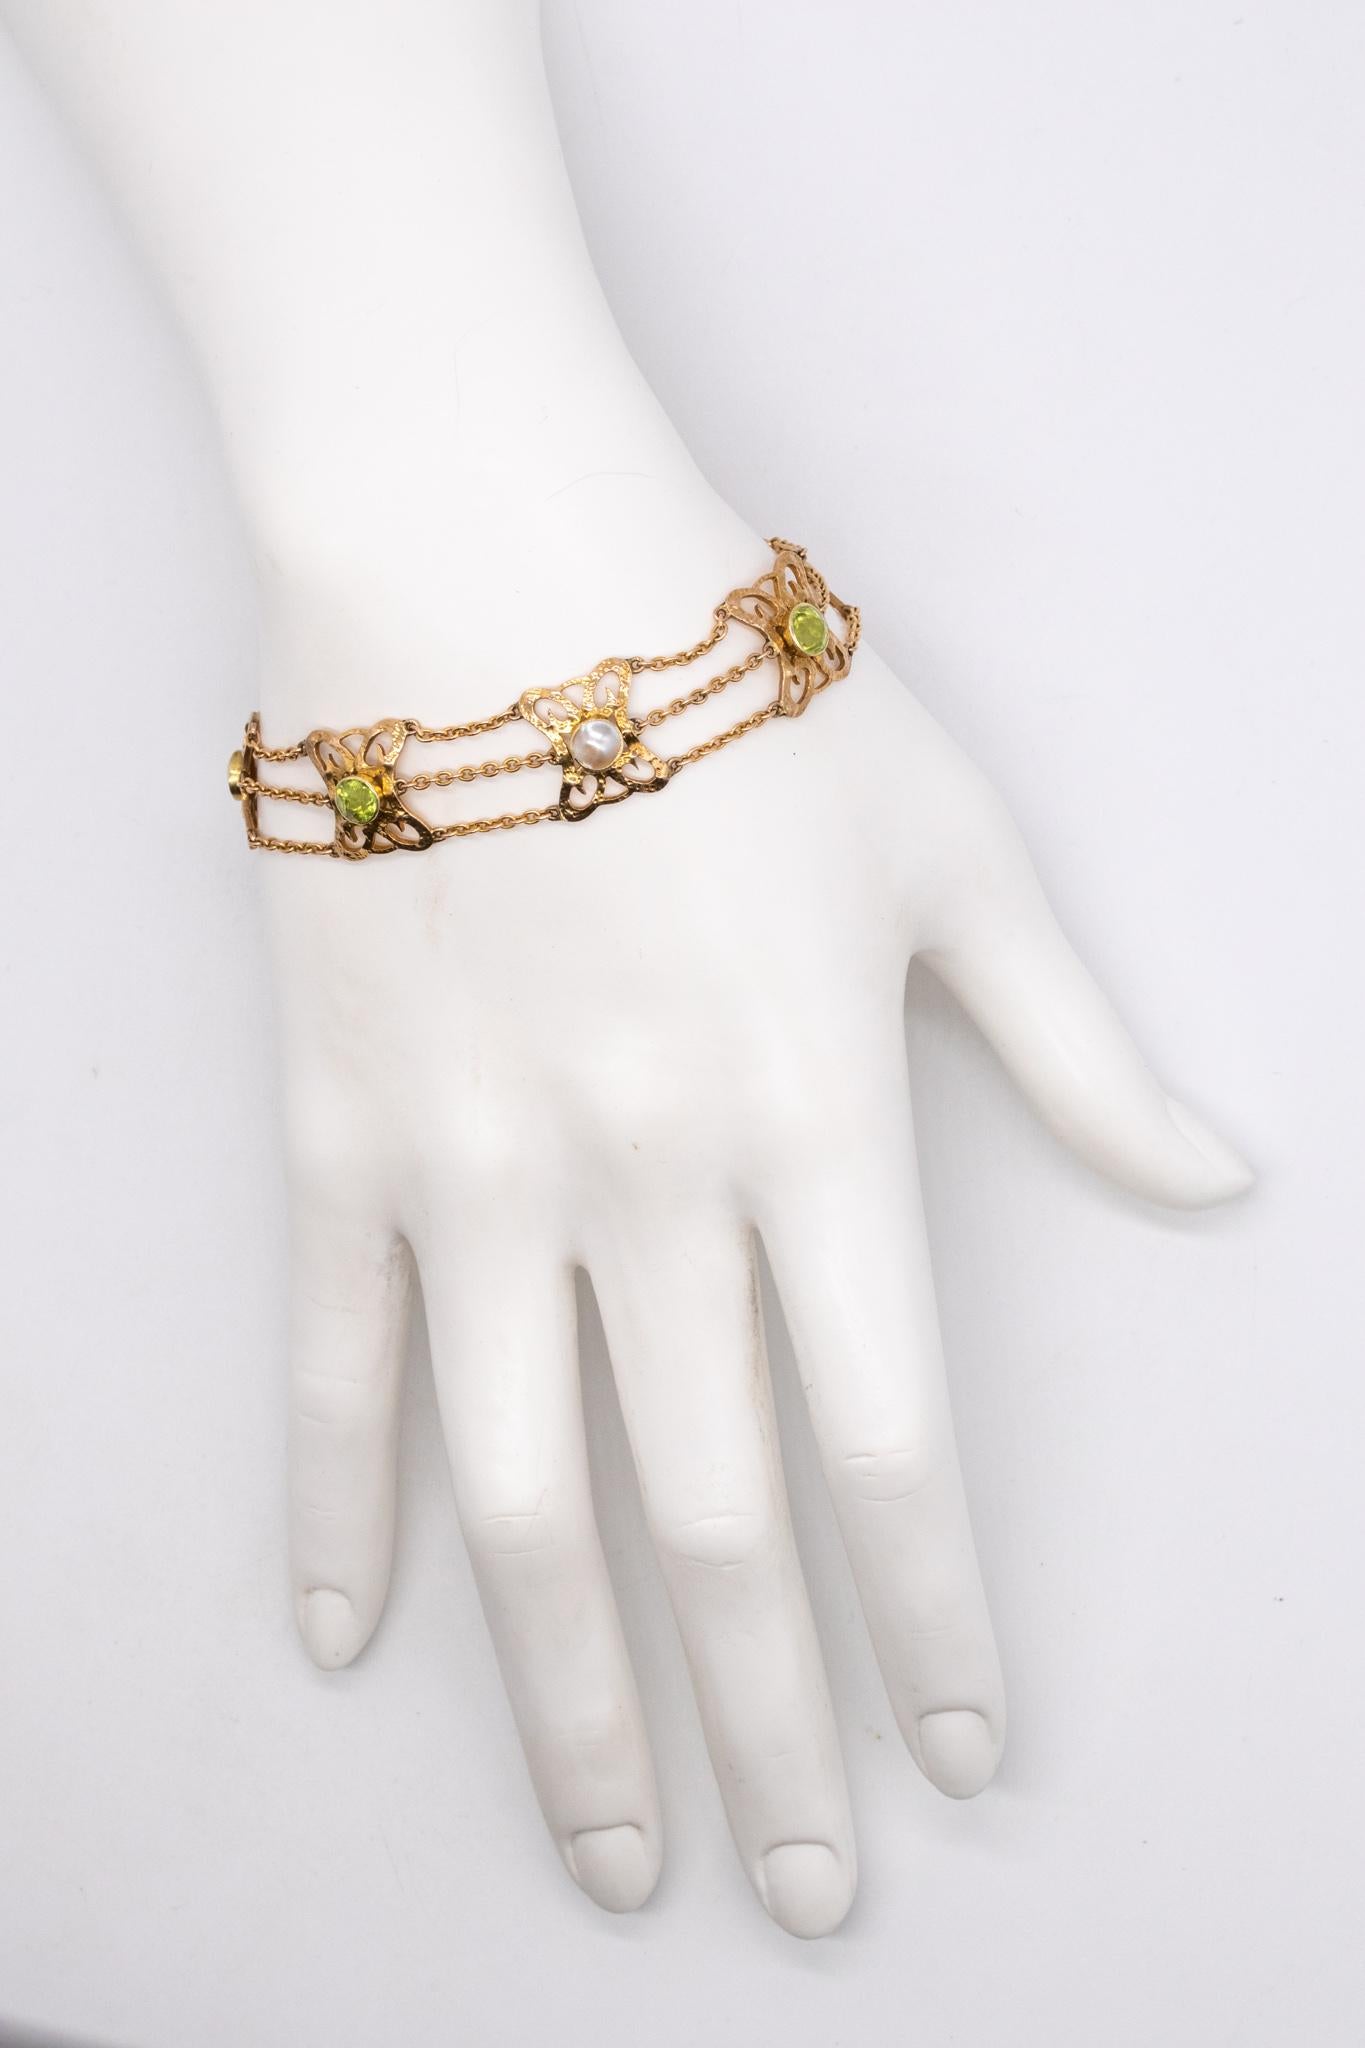 Ein wunderschönes Art-and-Craft-Armband von Liberty & Co.

Ein antikes Stück, das im Vereinigten Königreich zwischen 1890 und 1910 hergestellt wurde. Das Design ist stark von der Liberty-Art & Craft-Bewegung beeinflusst.

Er besteht aus 7